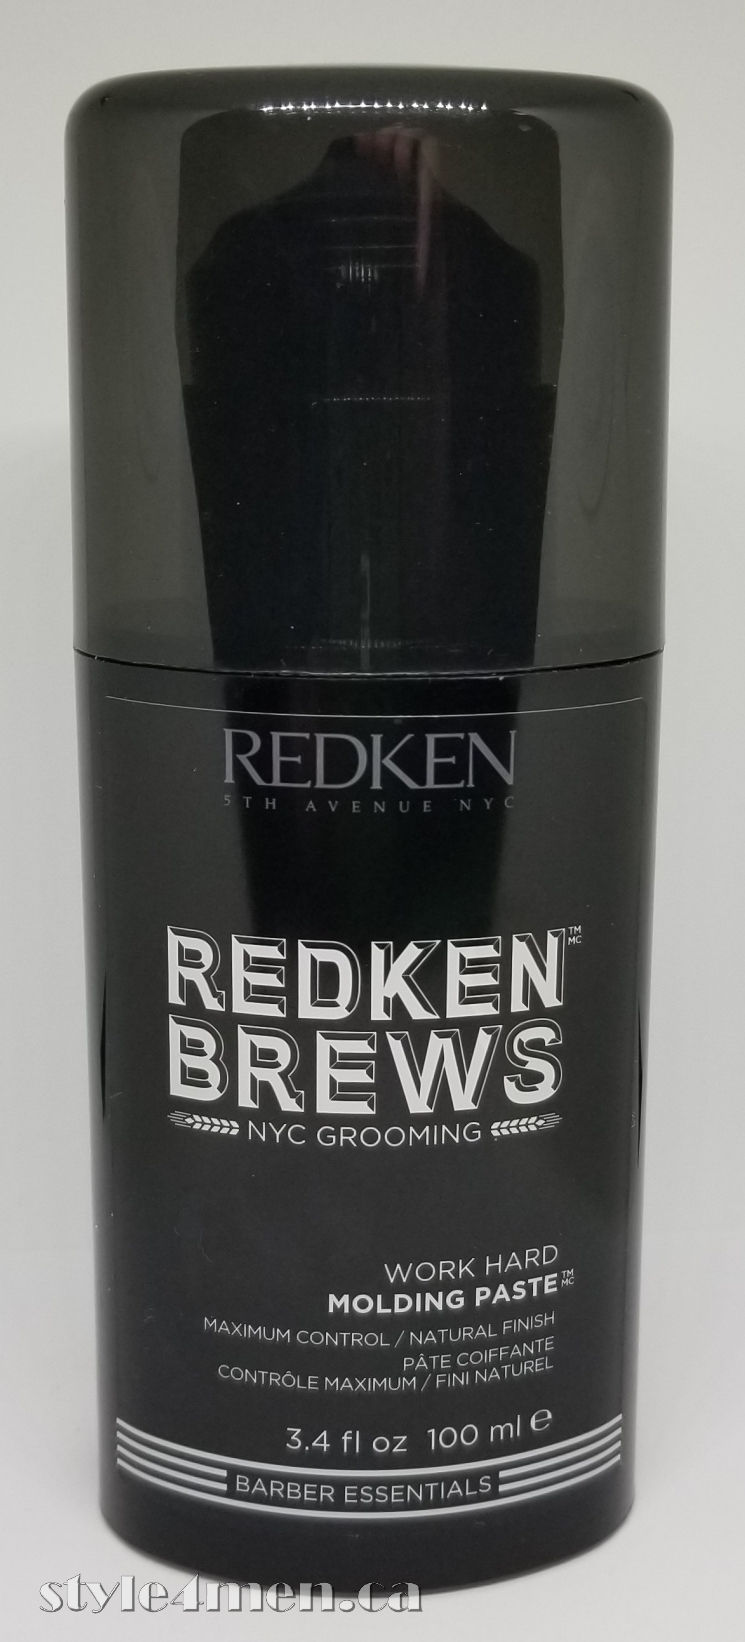 Redken Brews – Work Hard Molding Paste